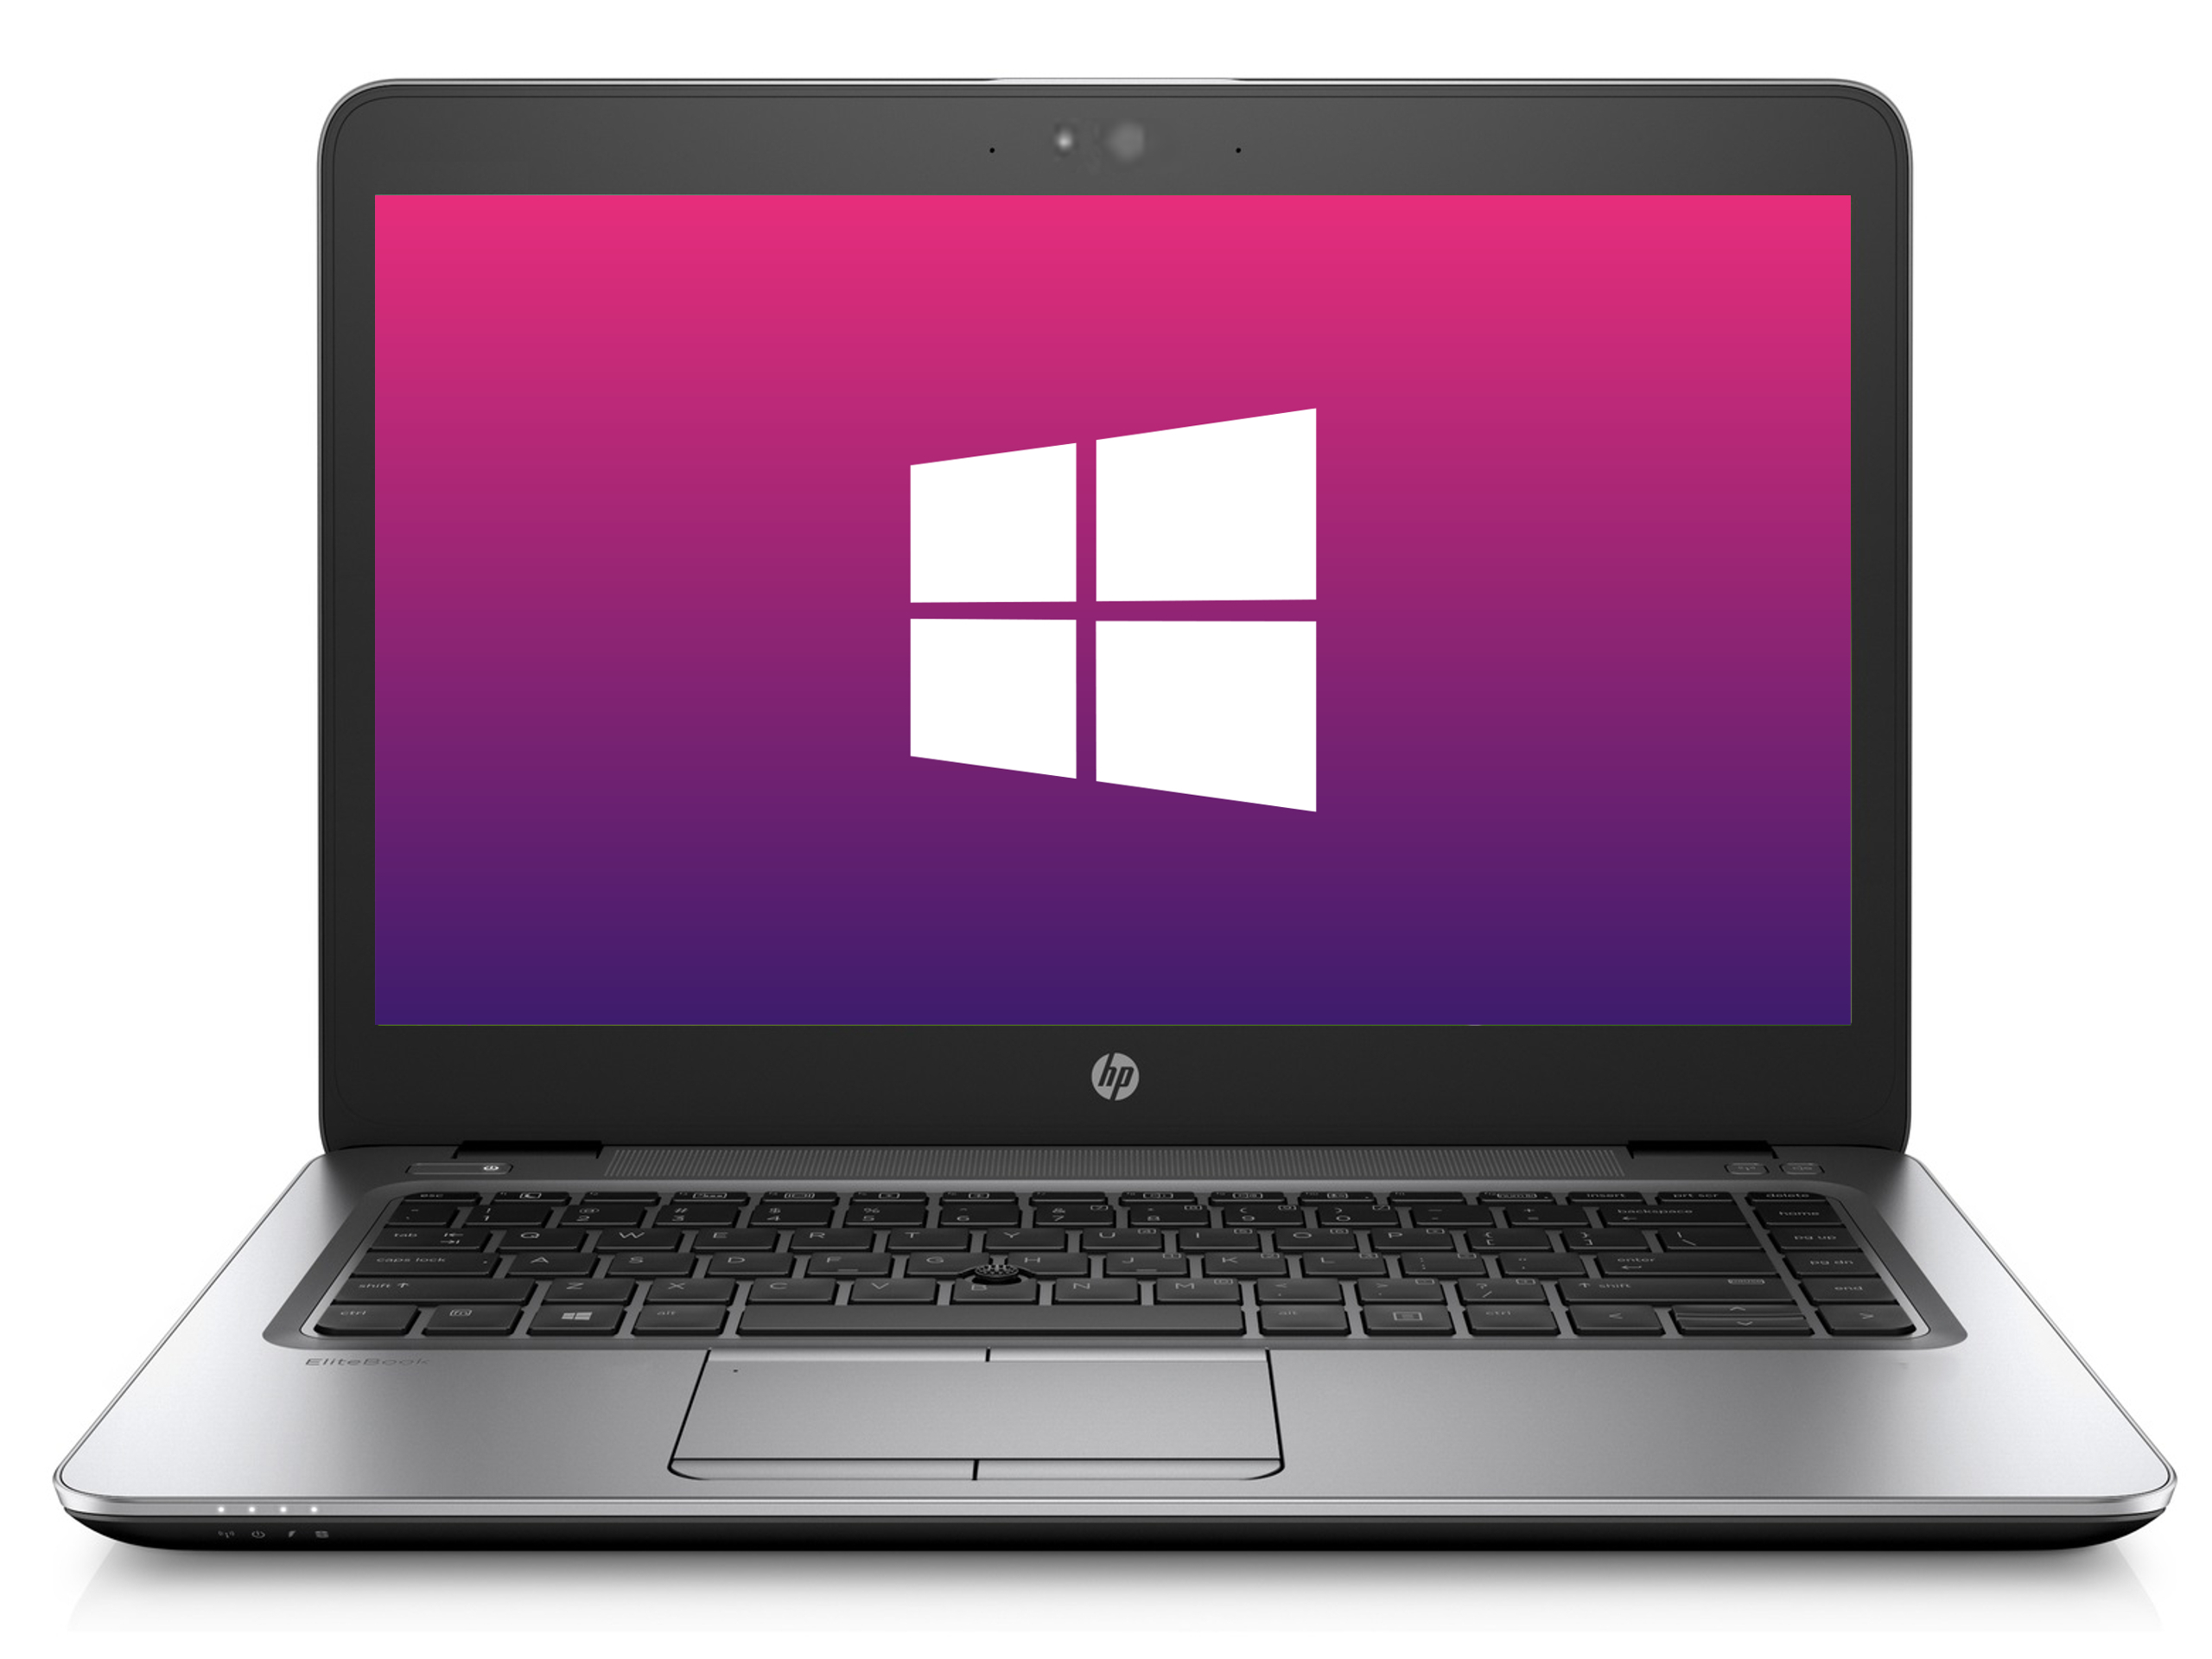 Ultrabook HP 840 G5 * 1920x1080 * 8GB * 256GB SSD